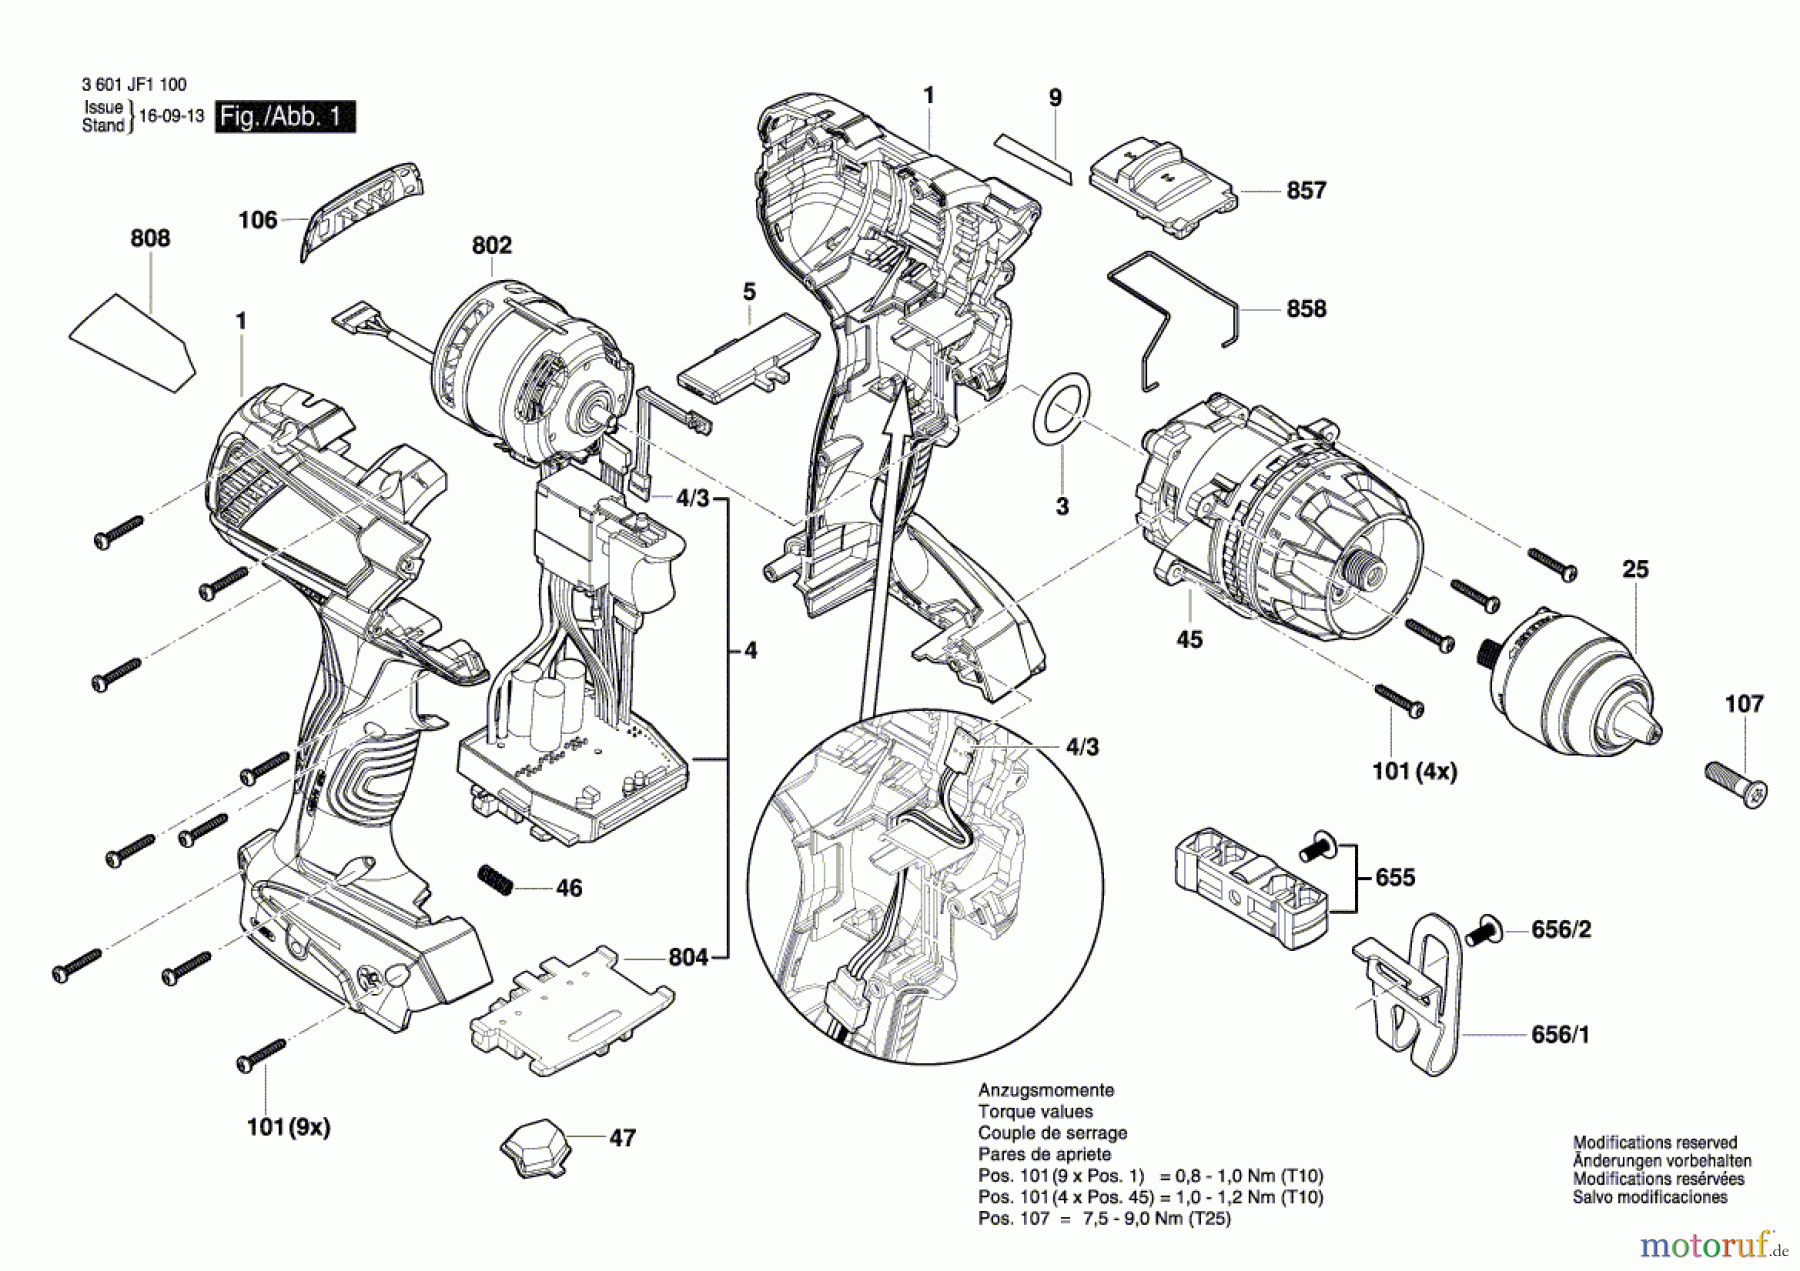  Bosch Akku Werkzeug Akku-Bohrschrauber GSR 18 VE-EC Seite 1